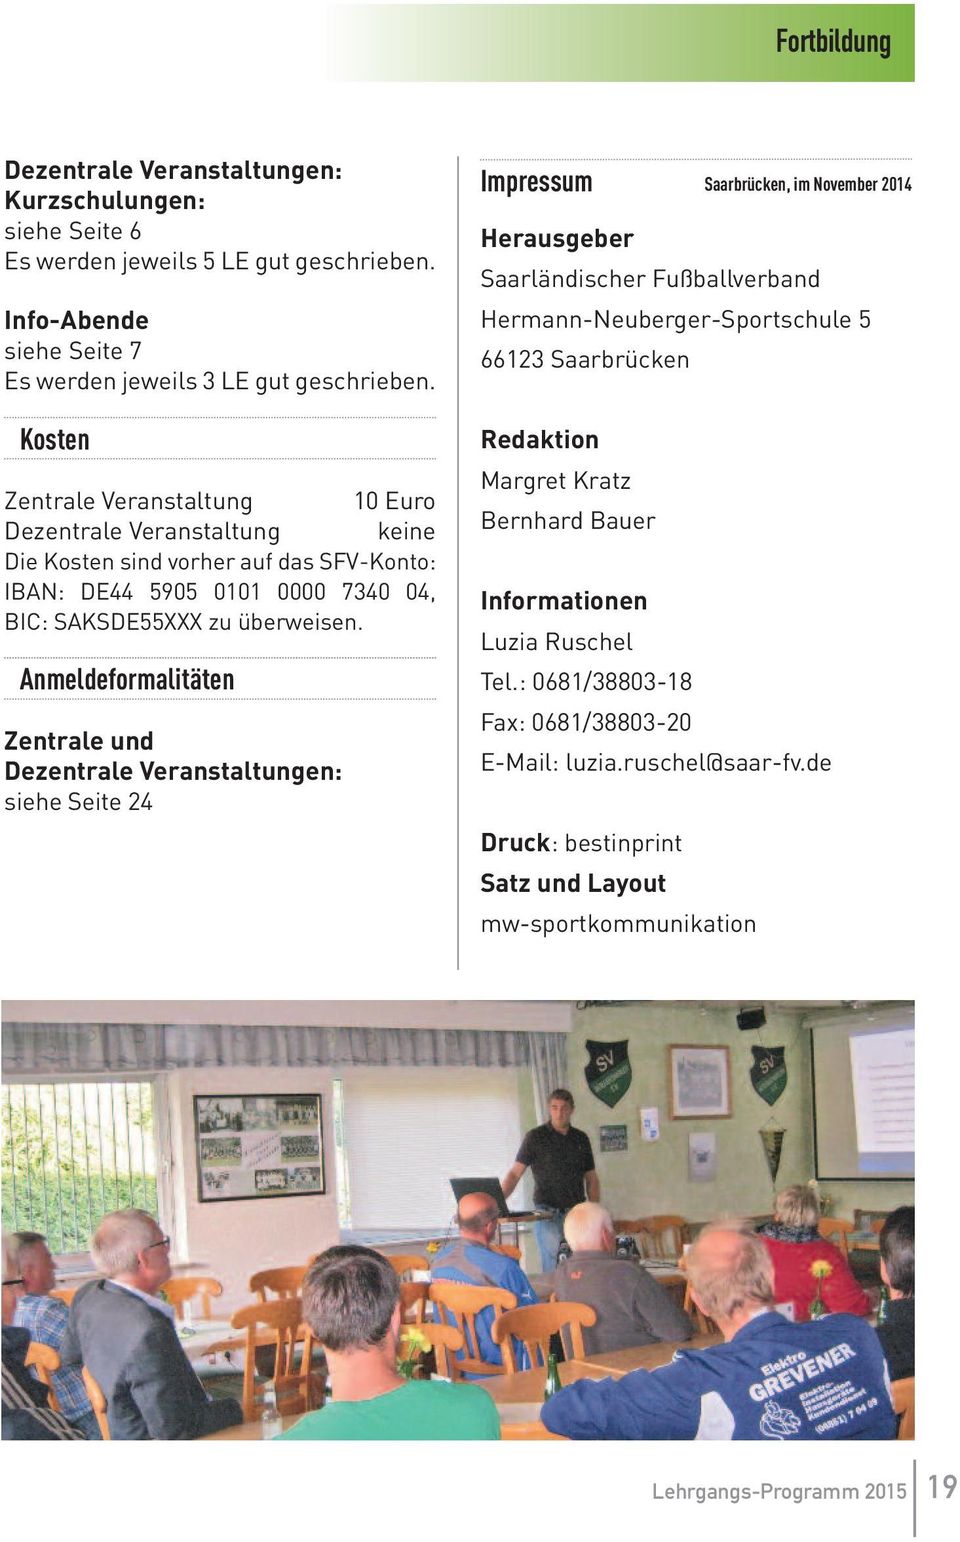 Anmeldeformalitäten Zentrale und Dezentrale Veranstaltungen: siehe Seite 24 Impressum Saarbrücken, im November 2014 Herausgeber Saarländischer Fußballverband Hermann-Neuberger-Sportschule 5 66123